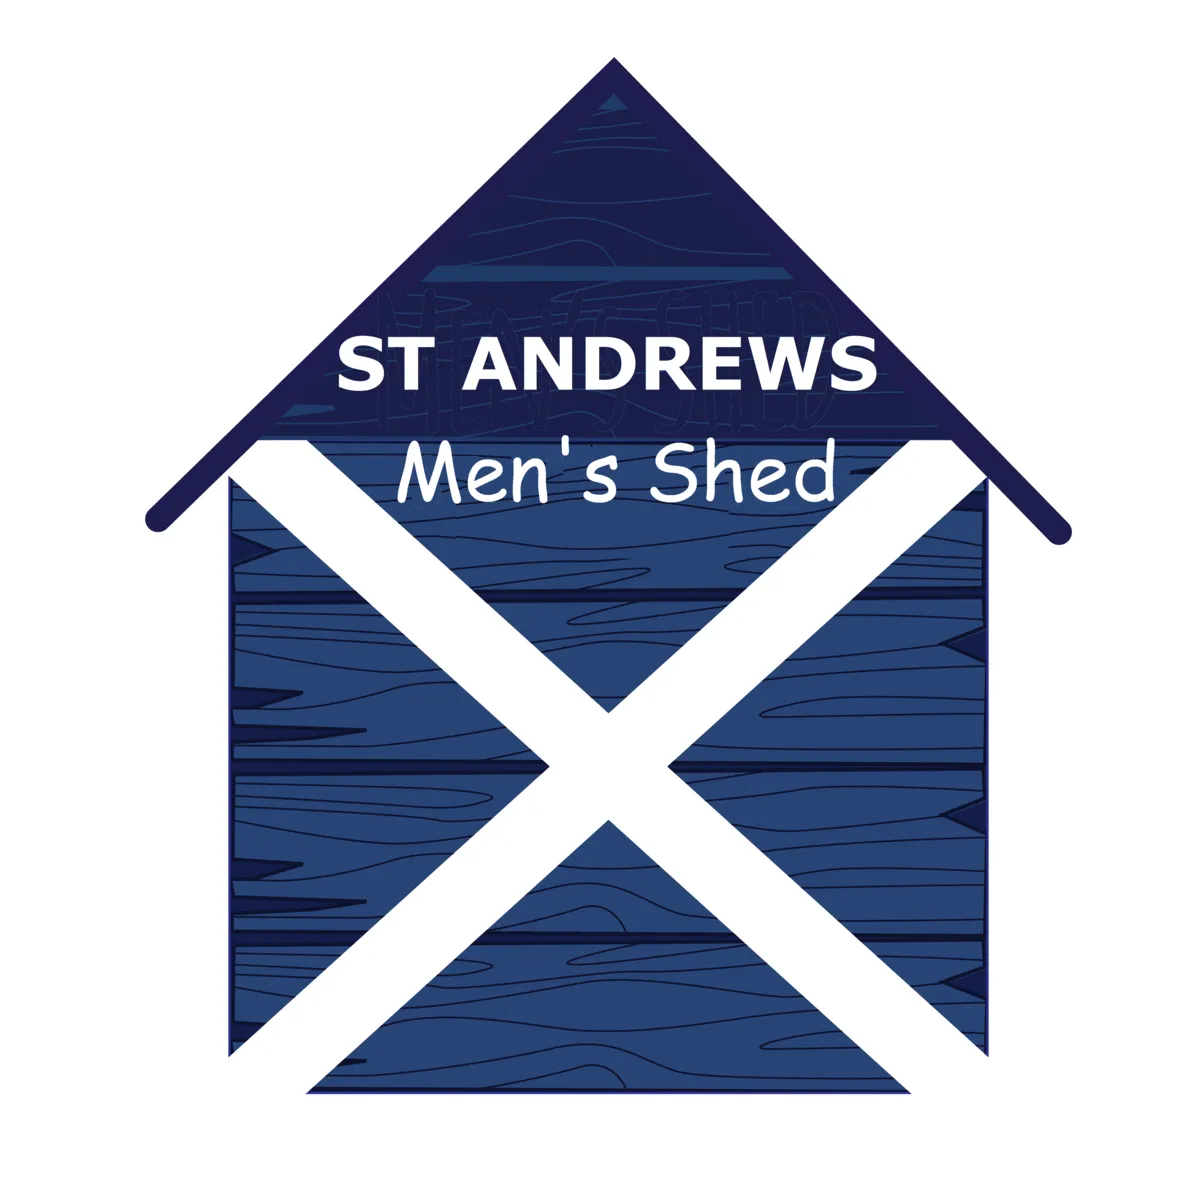 St Andrews men's shed 